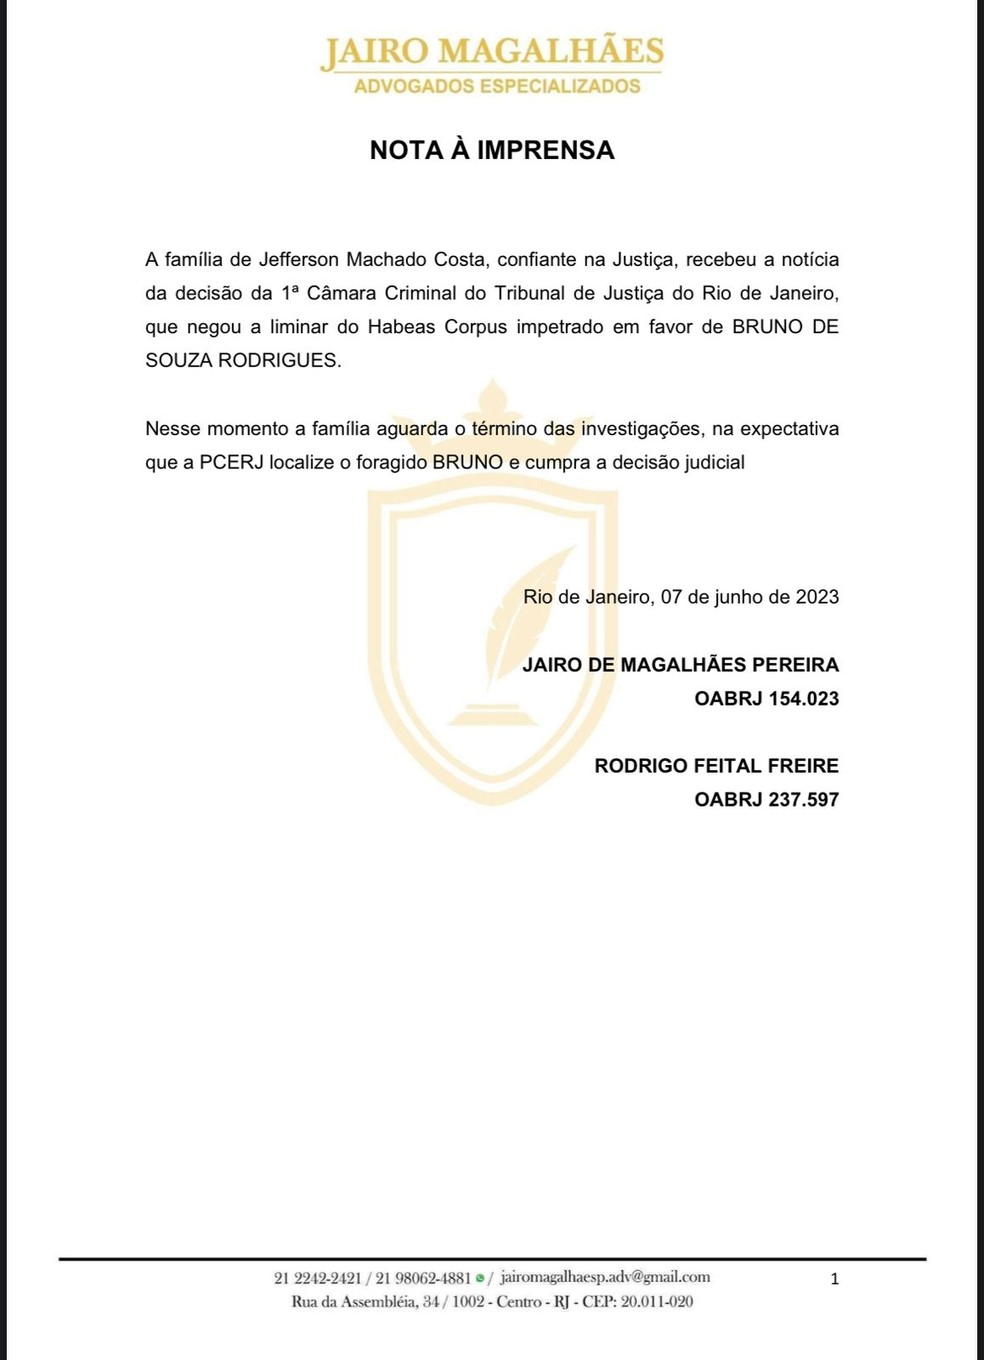 Nota oficial à imprensa do advogado da família de Jeff Machado — Foto: Jairo Magalhães - Advogados Especializados